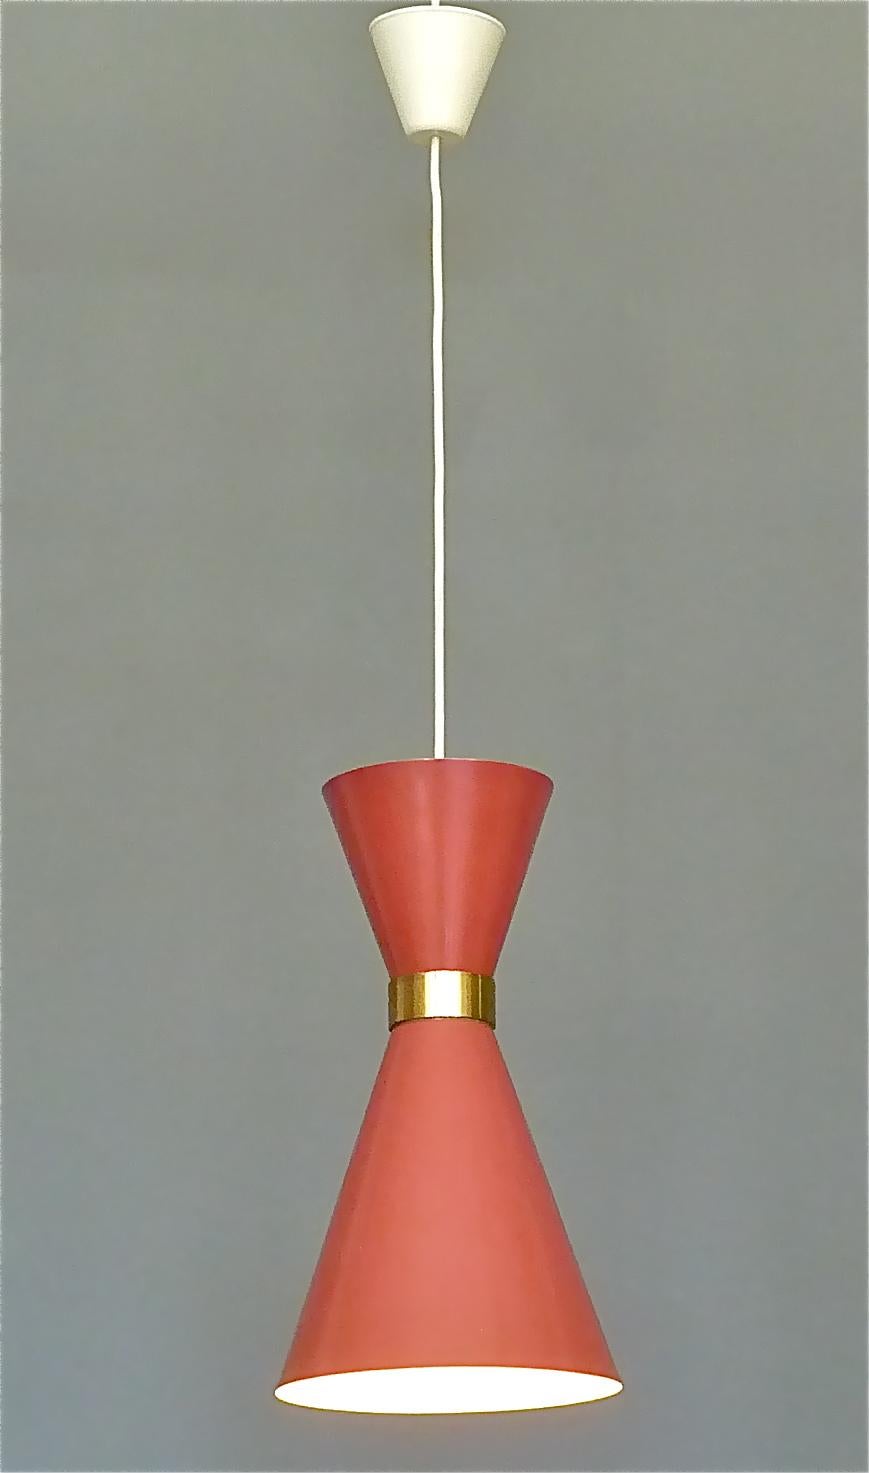 Midcentury Carl Moor BAG Turgi Pendant Lamp Diabolo Red Stilnovo Style 1950s For Sale 2